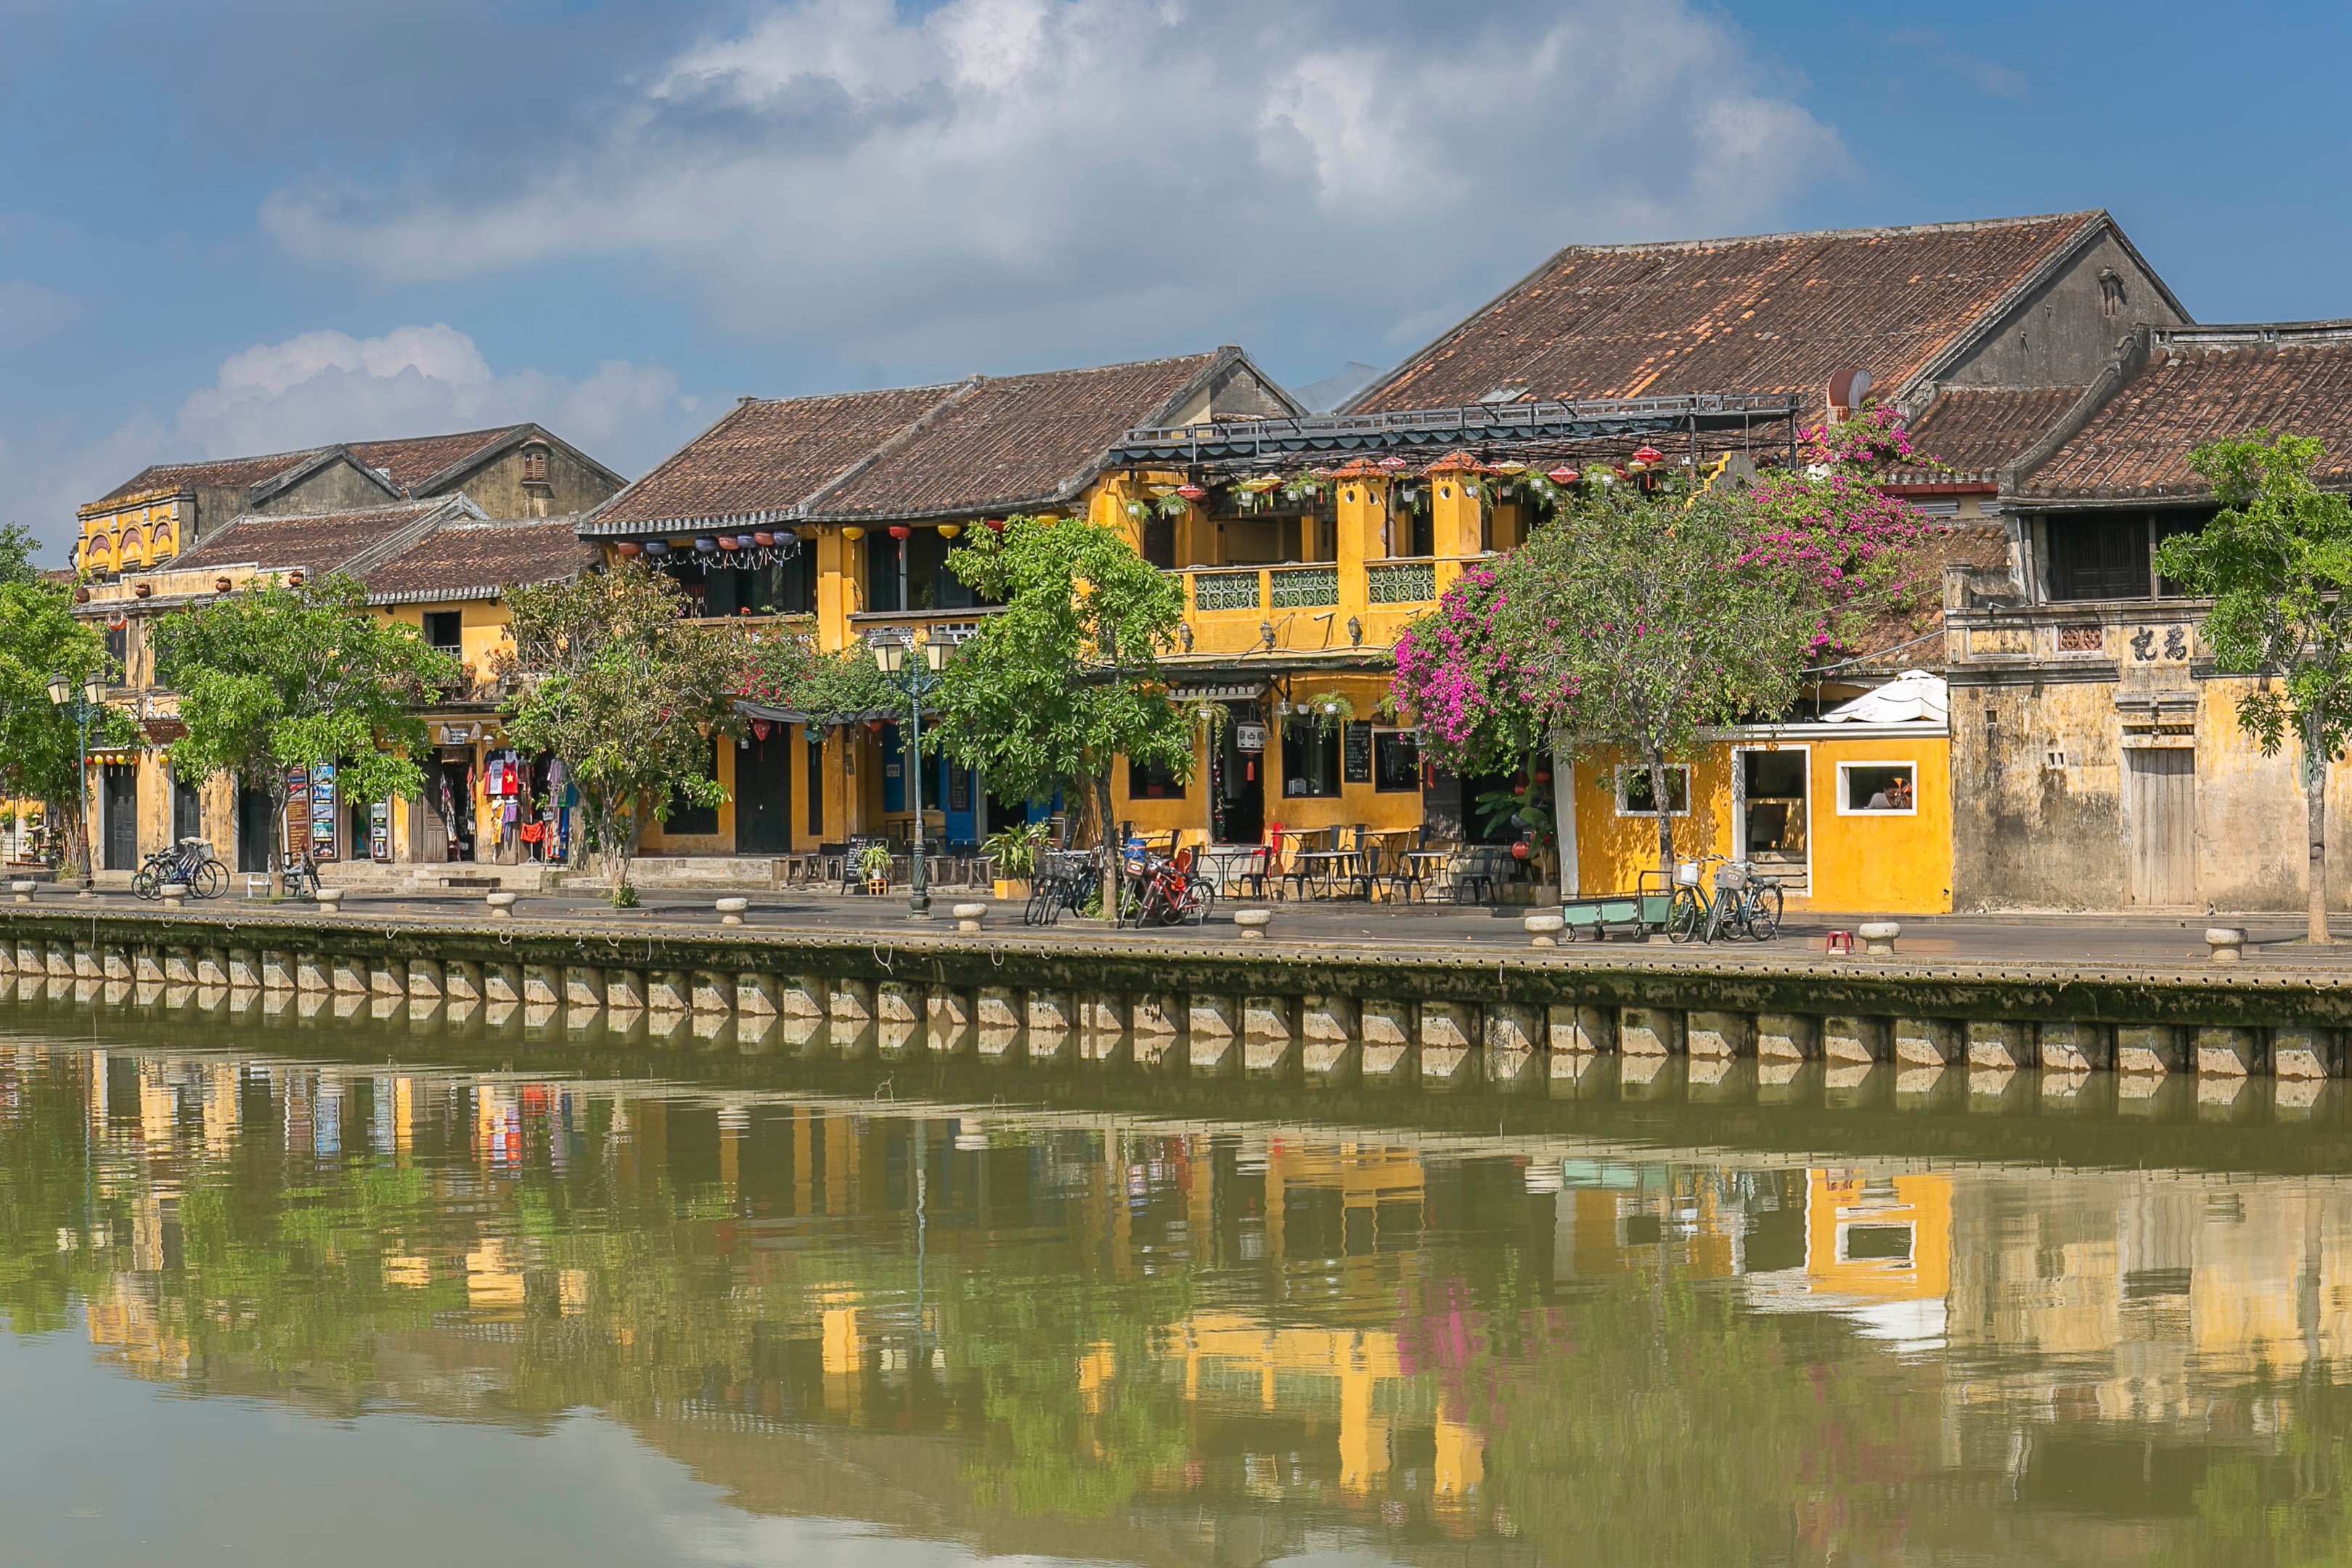 Thu Bon River, Hoi An Old Town